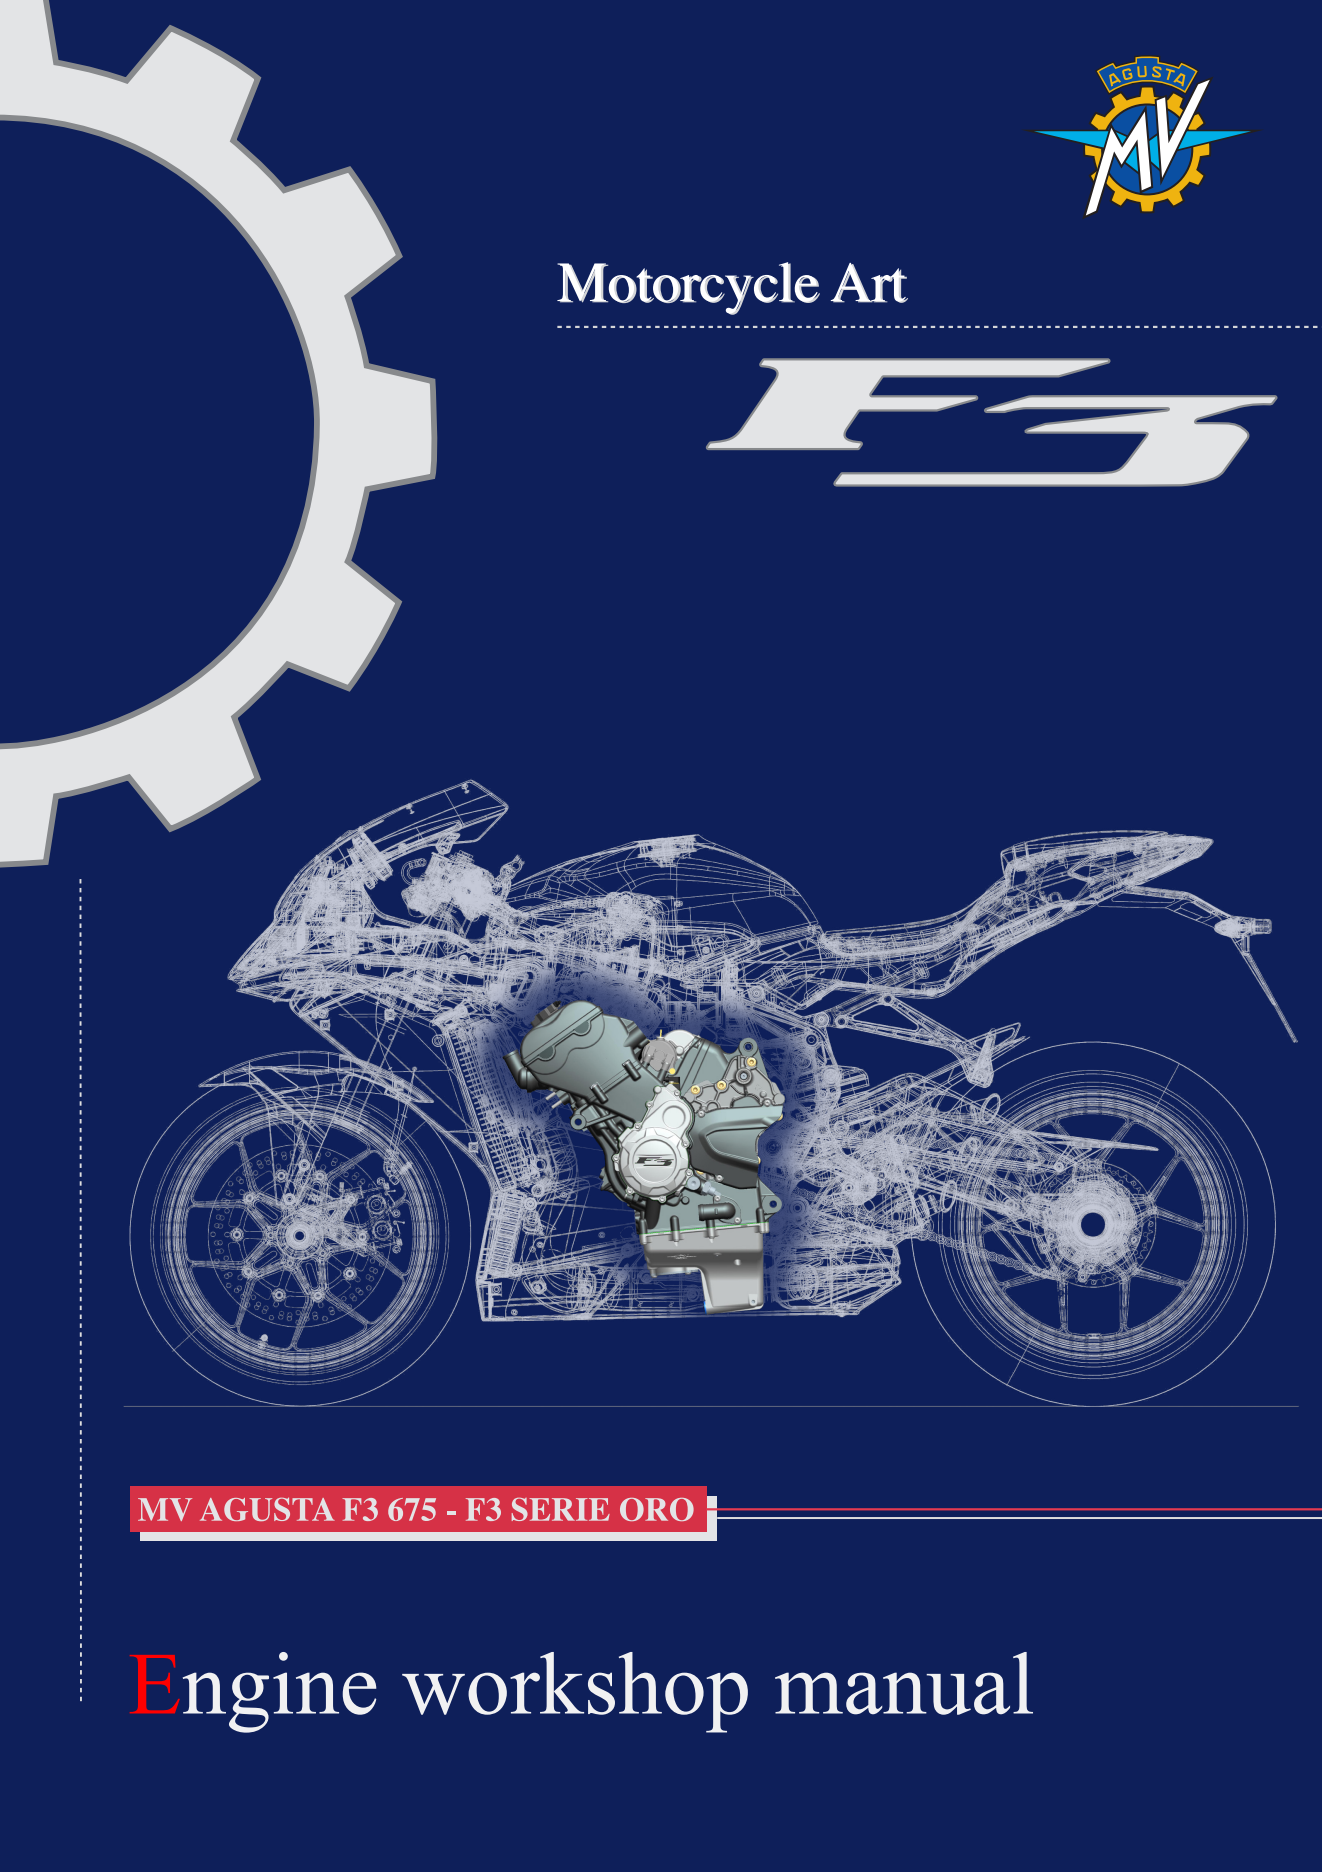 原版英文2012年奥古斯塔f3MV AGUSTA F3 675 -F3 SERIE ORO发动机维修手册插图